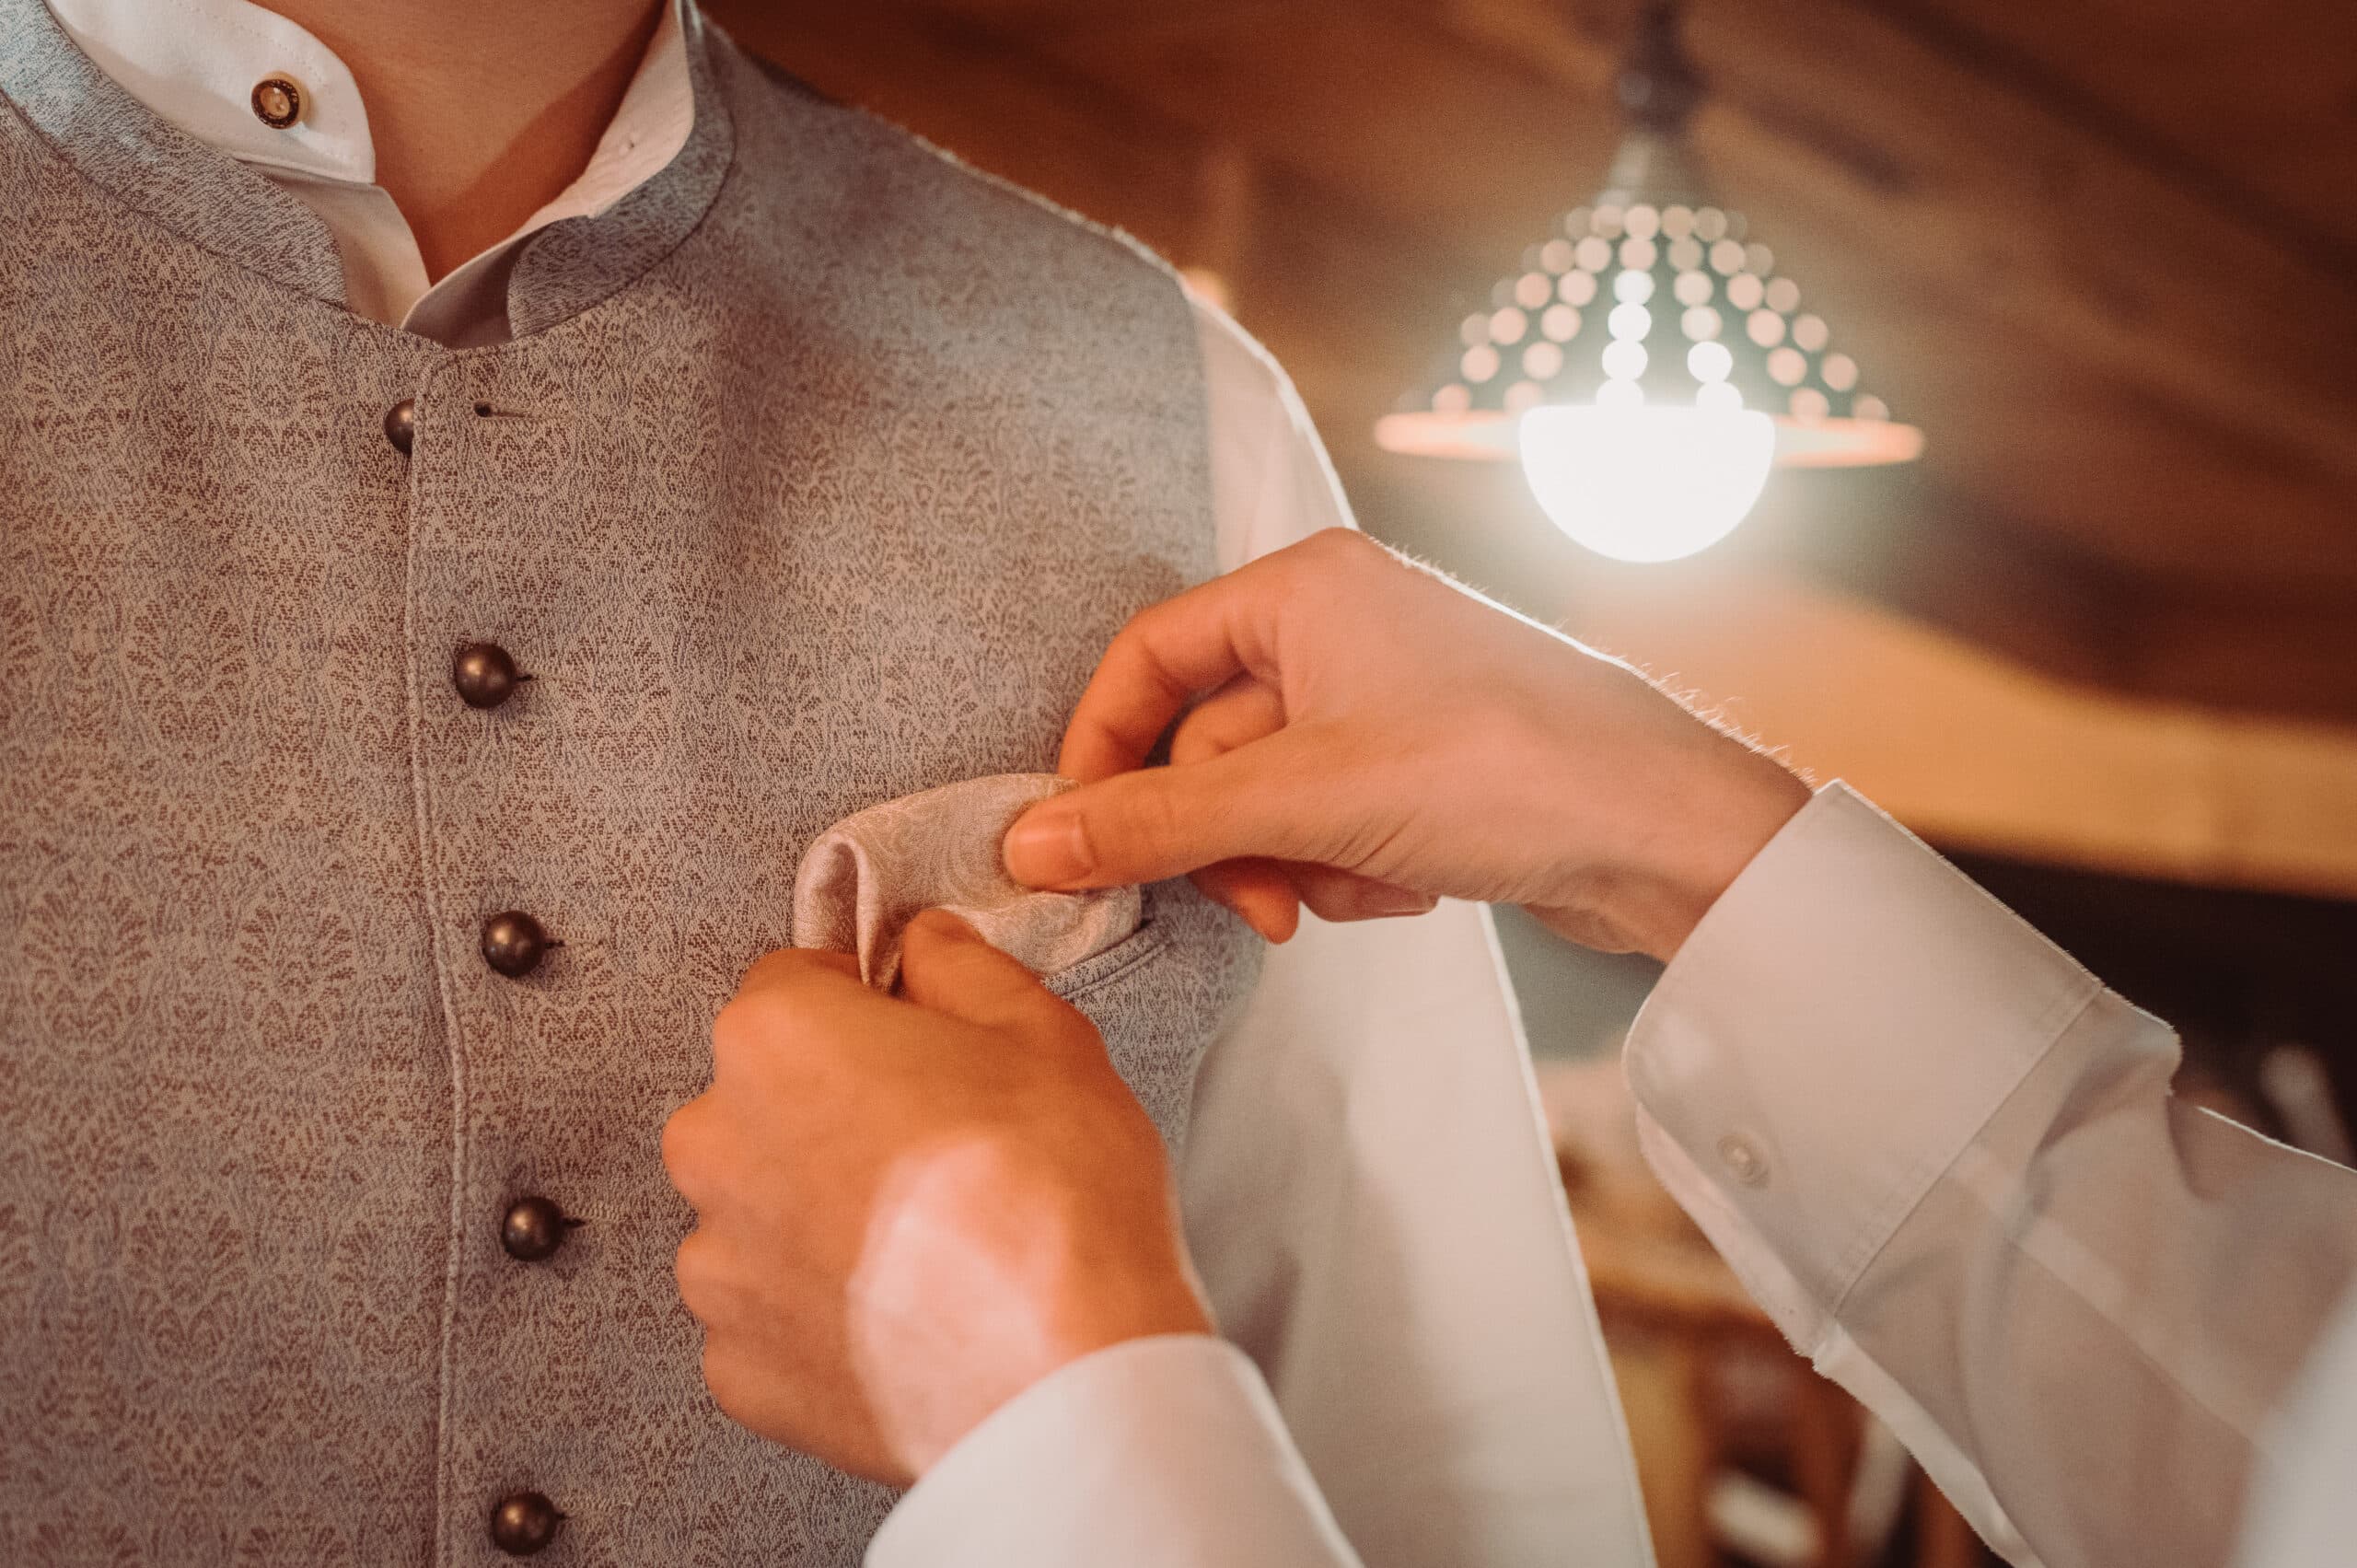 Das Getting Ready vom Bräutigam auf der Meckatzer Sportalp. Eine Nahaufnahme wie dem Bräutigam in die Tasche der Weste ein Tuch eingesteckt wird.